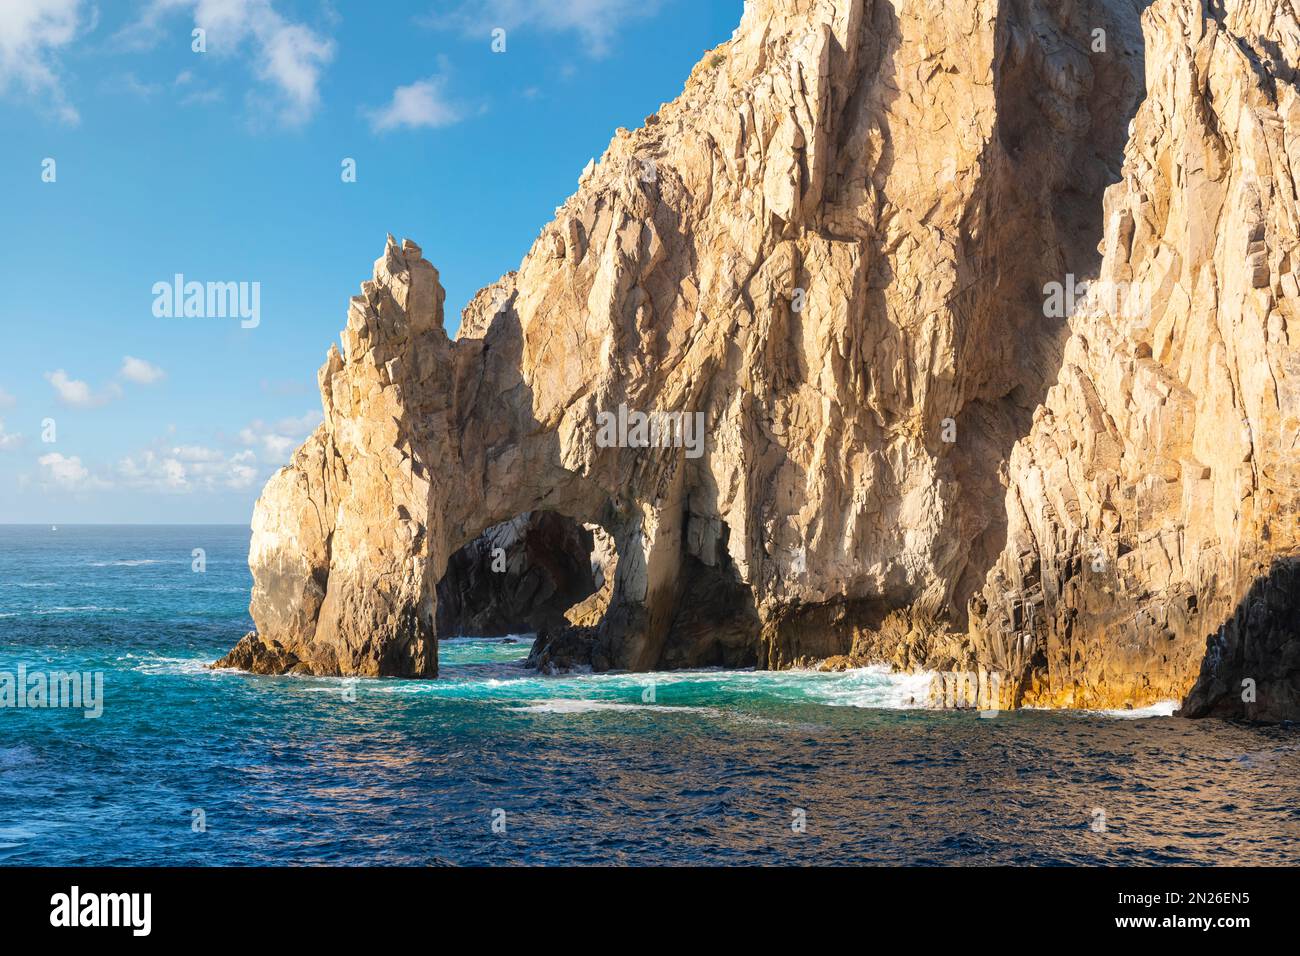 L'arche El Arco aux formations rocheuses de l'extrémité du territoire sur la péninsule de Baja, à Cabo San Lucas, Mexique. Banque D'Images